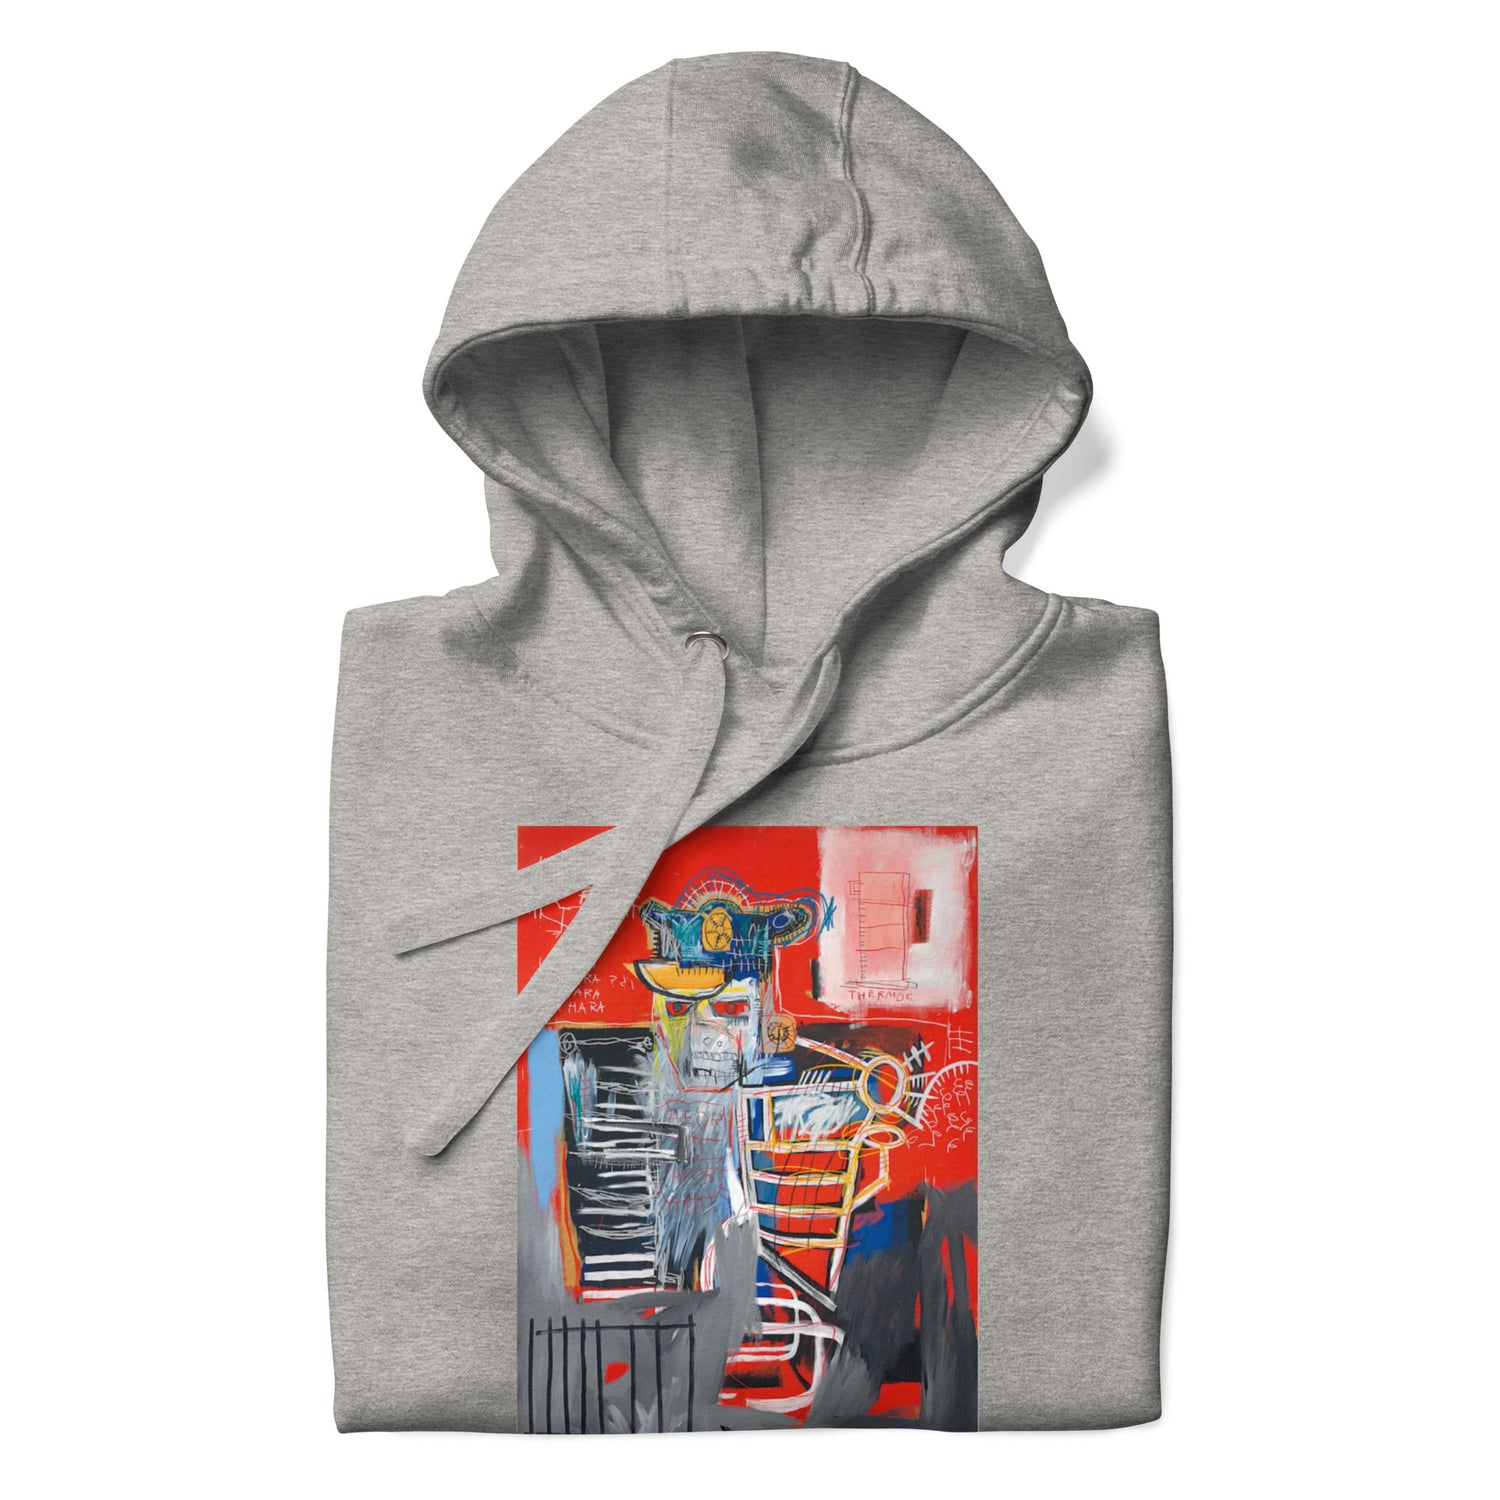 Jean-Michel Basquiat "La Hara" Artwork Printed Premium Streetwear Sweatshirt Hoodie Grey